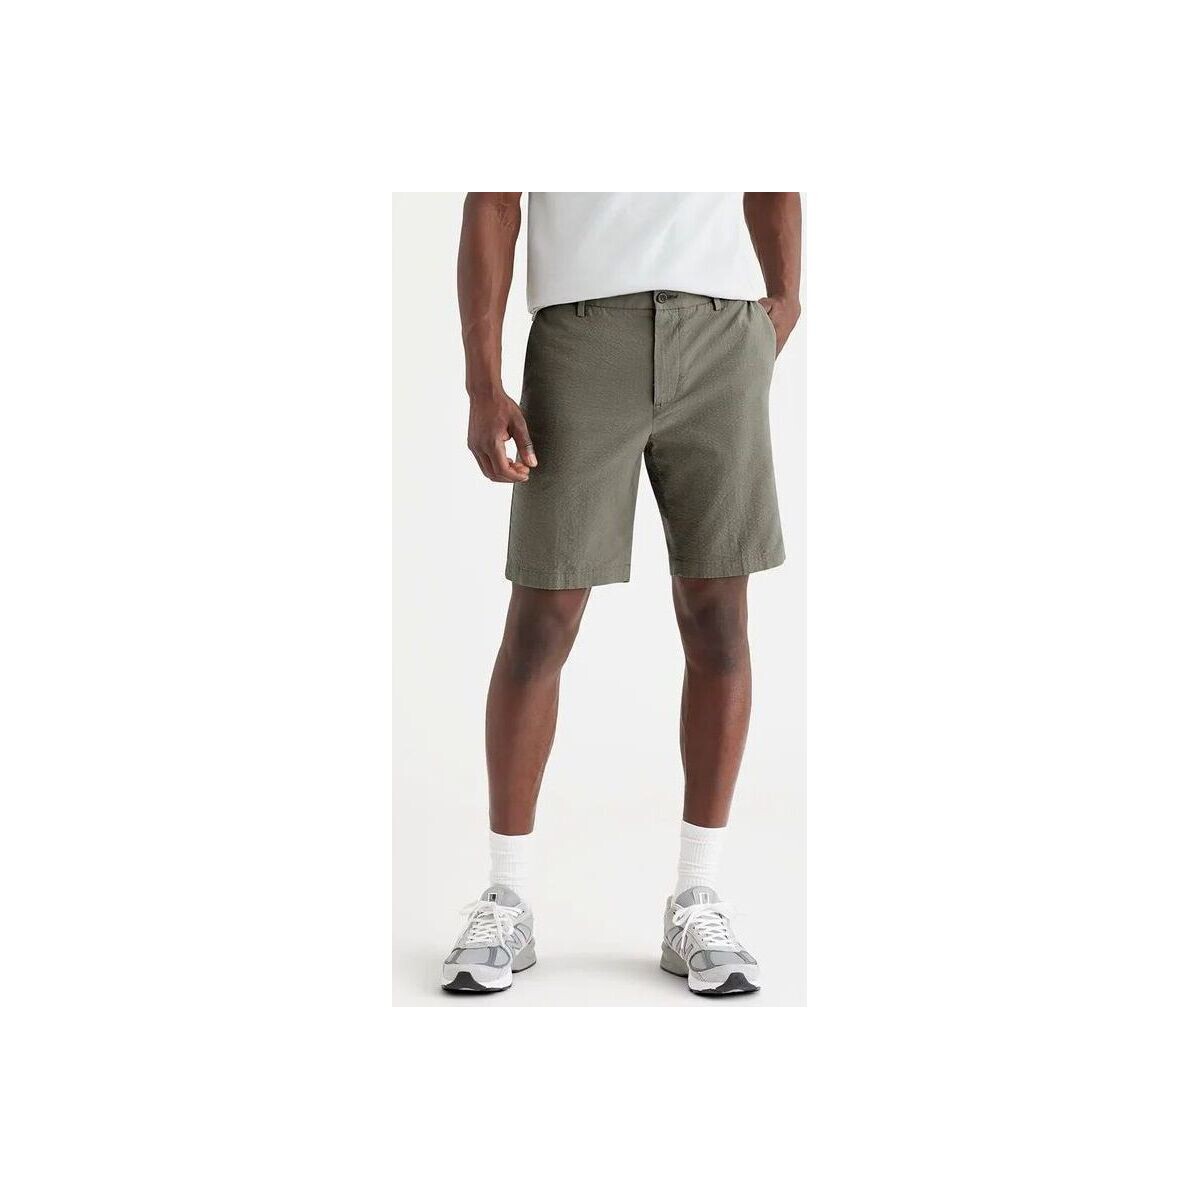 Textil Homem Shorts / Bermudas Dockers 85862 0082 CHINOS SHORT-CAMO Verde